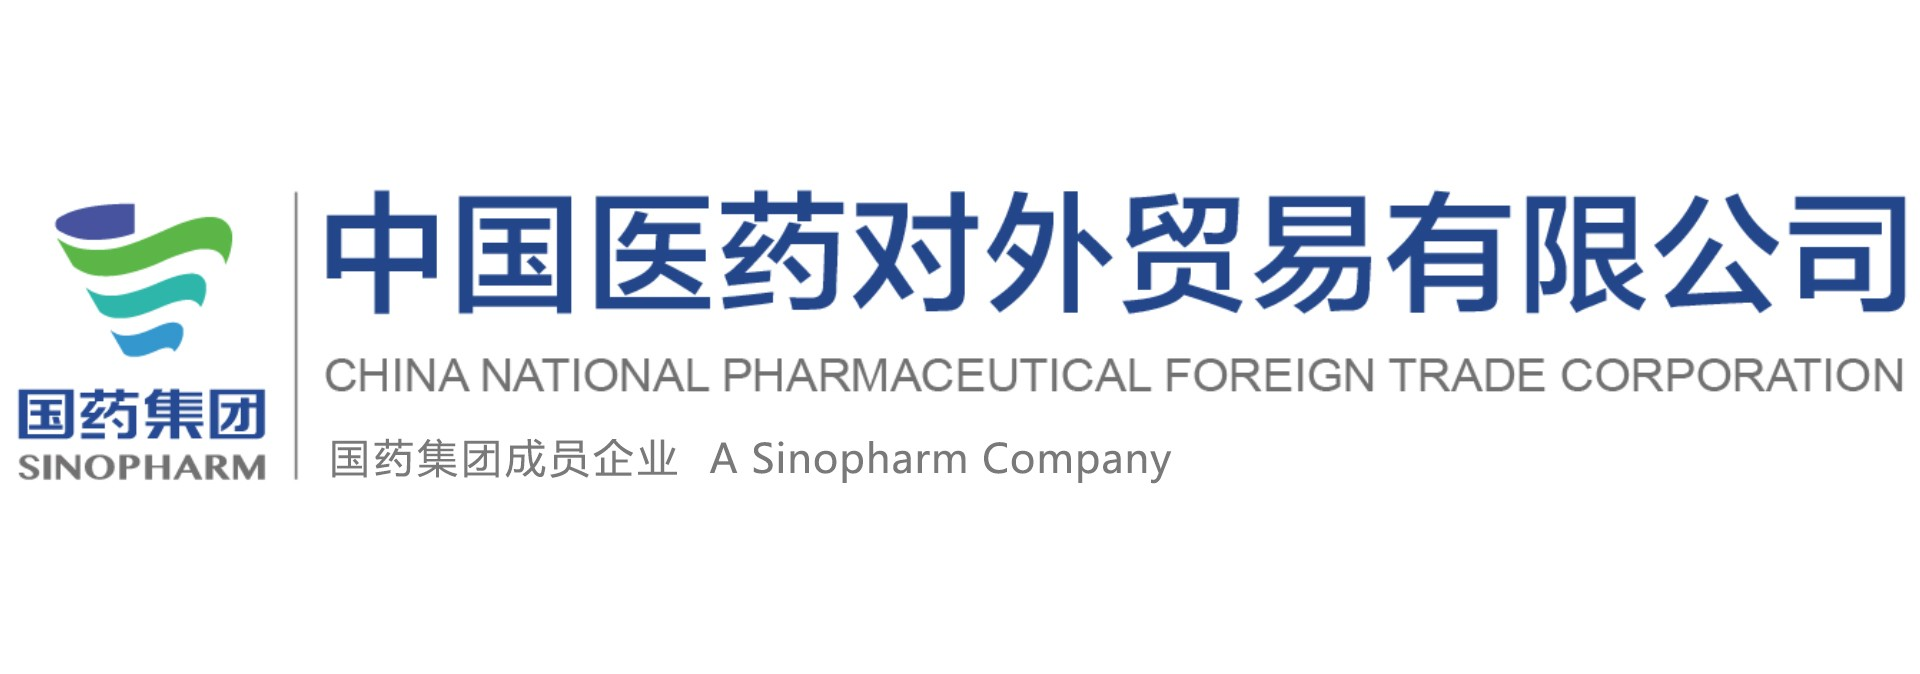 中国医药对外贸易有限公司科学仪器产品部